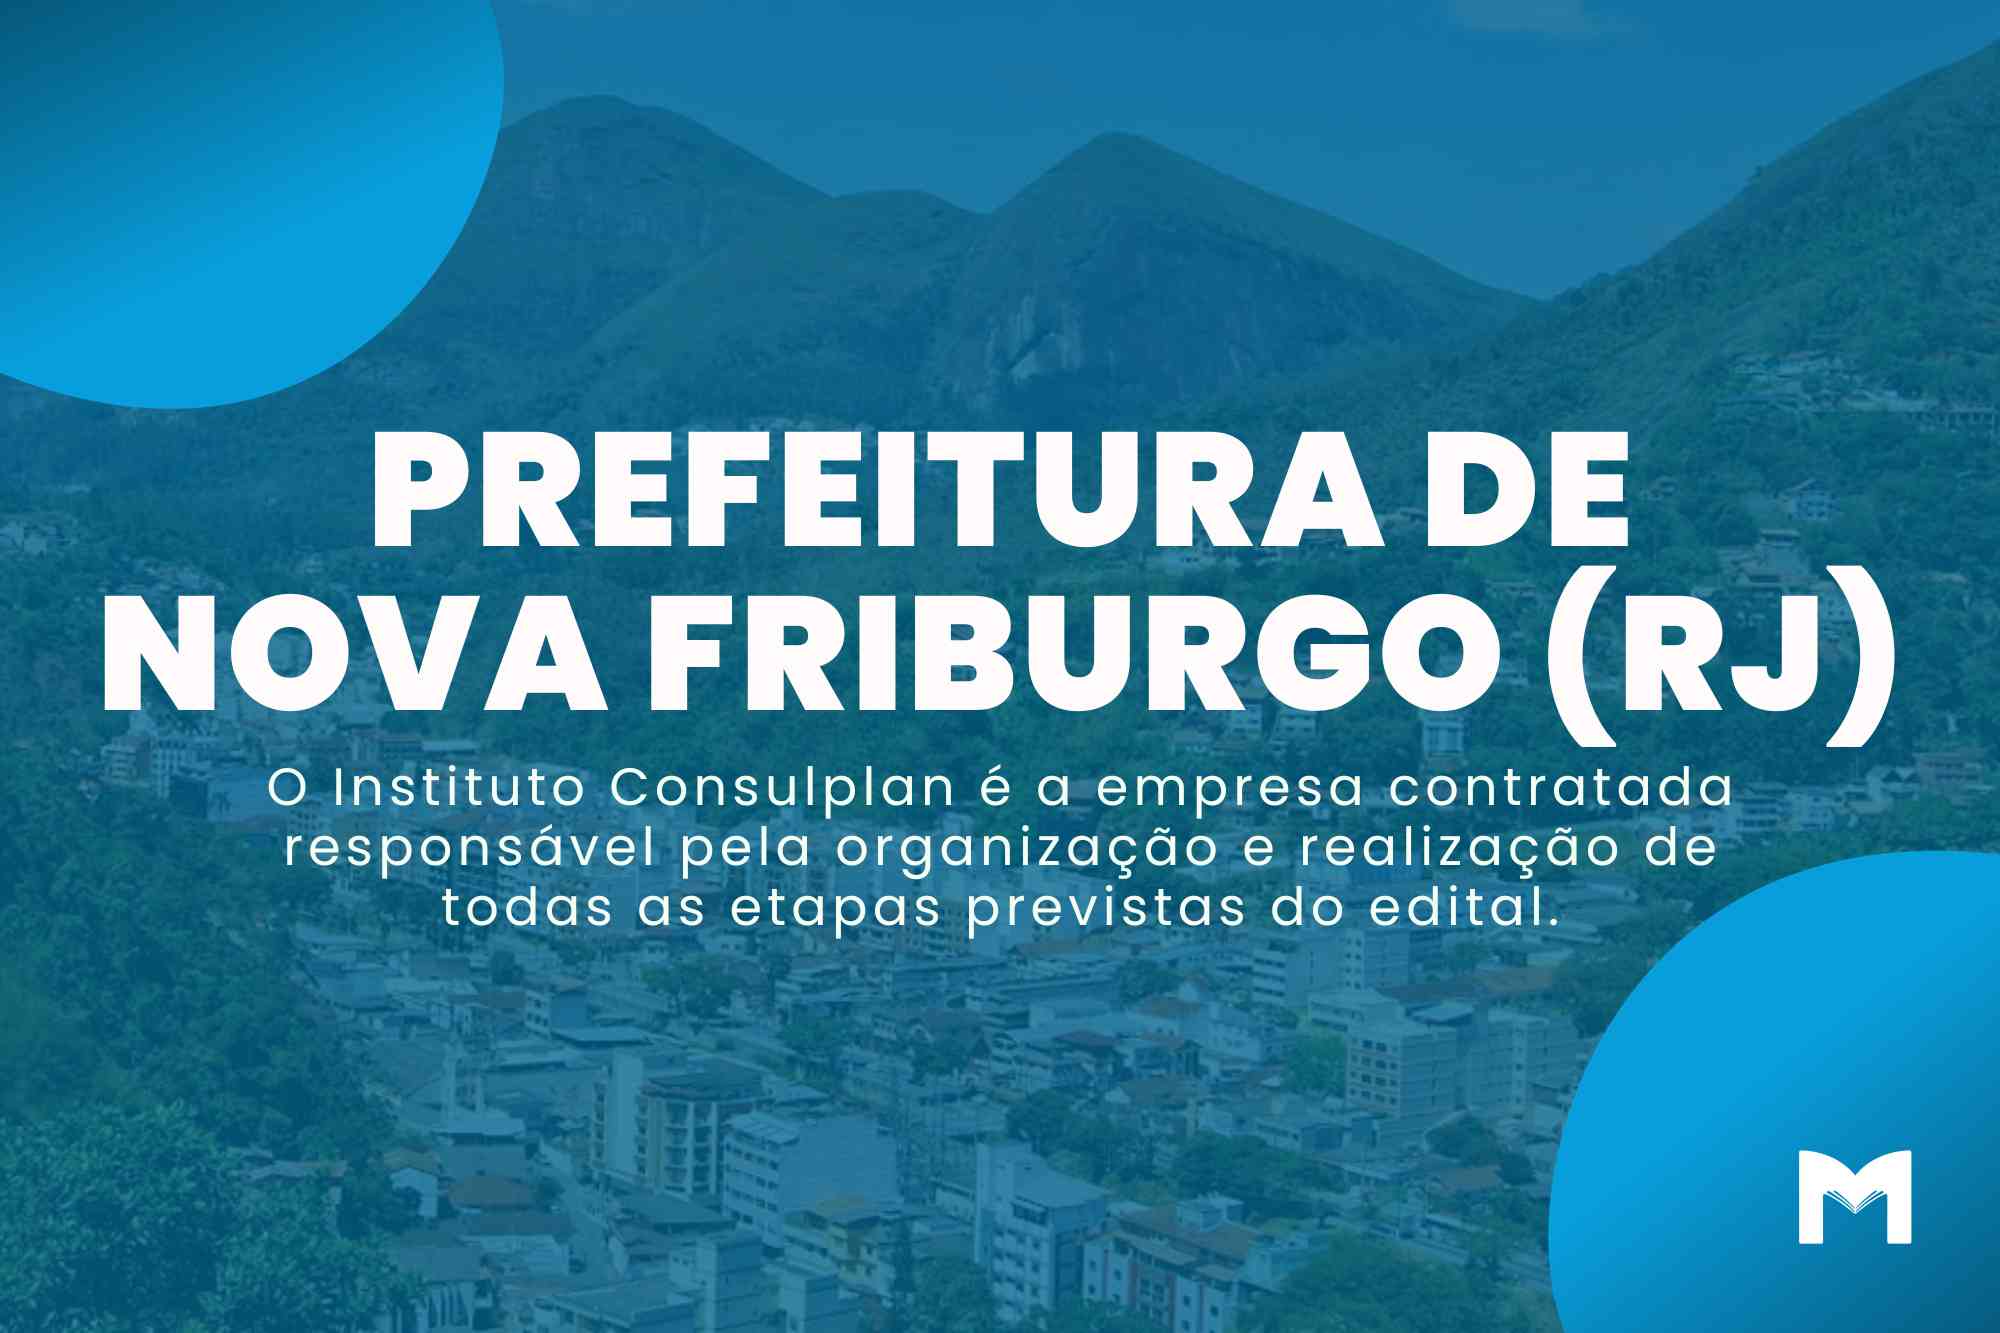 Concurso Nova Friburgo RJ: Edital tem mais de 1700 vagas!